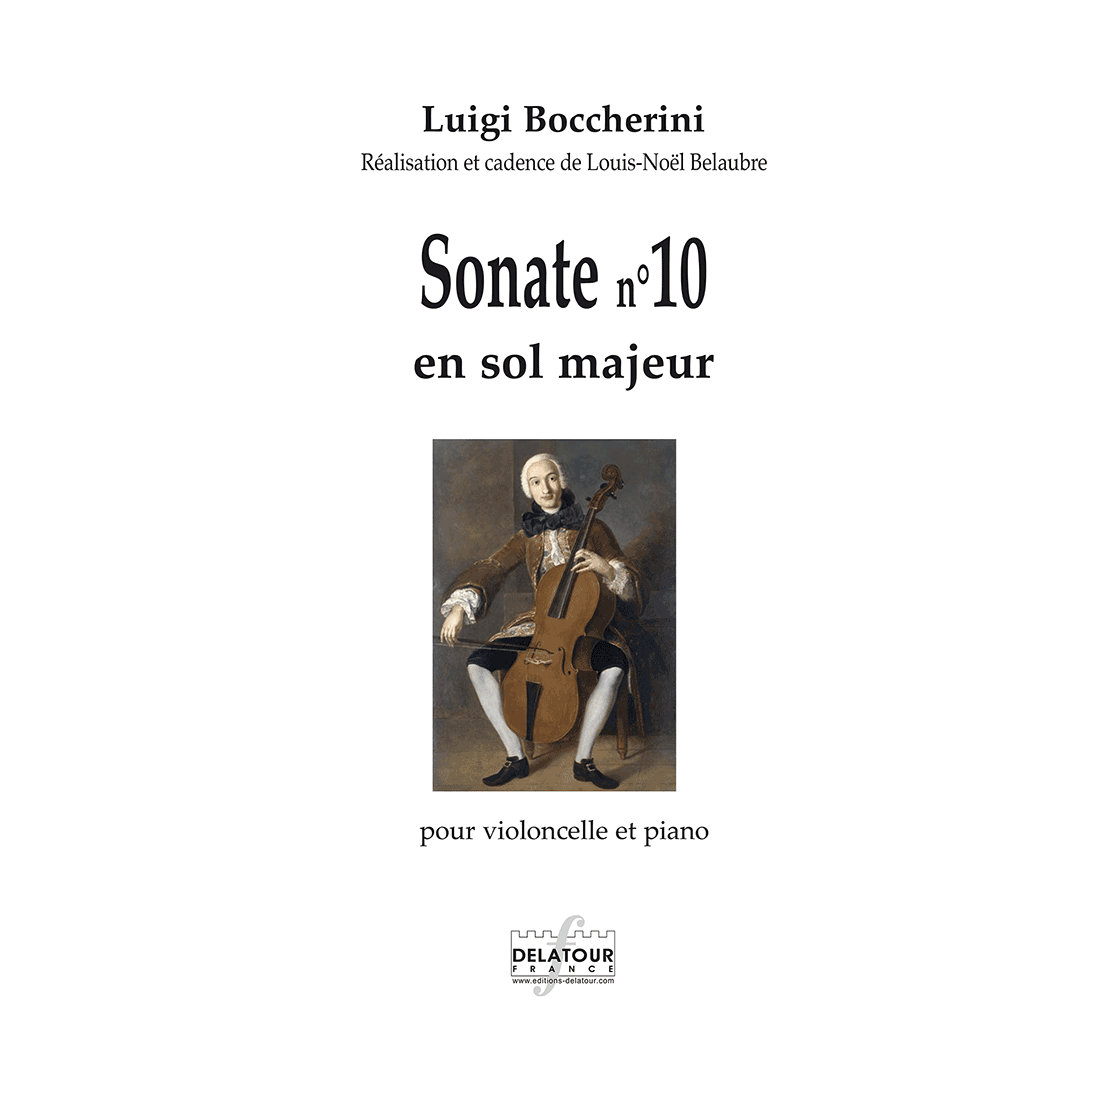 Sonate n°10 en sol majeur für Violoncello und Klavier